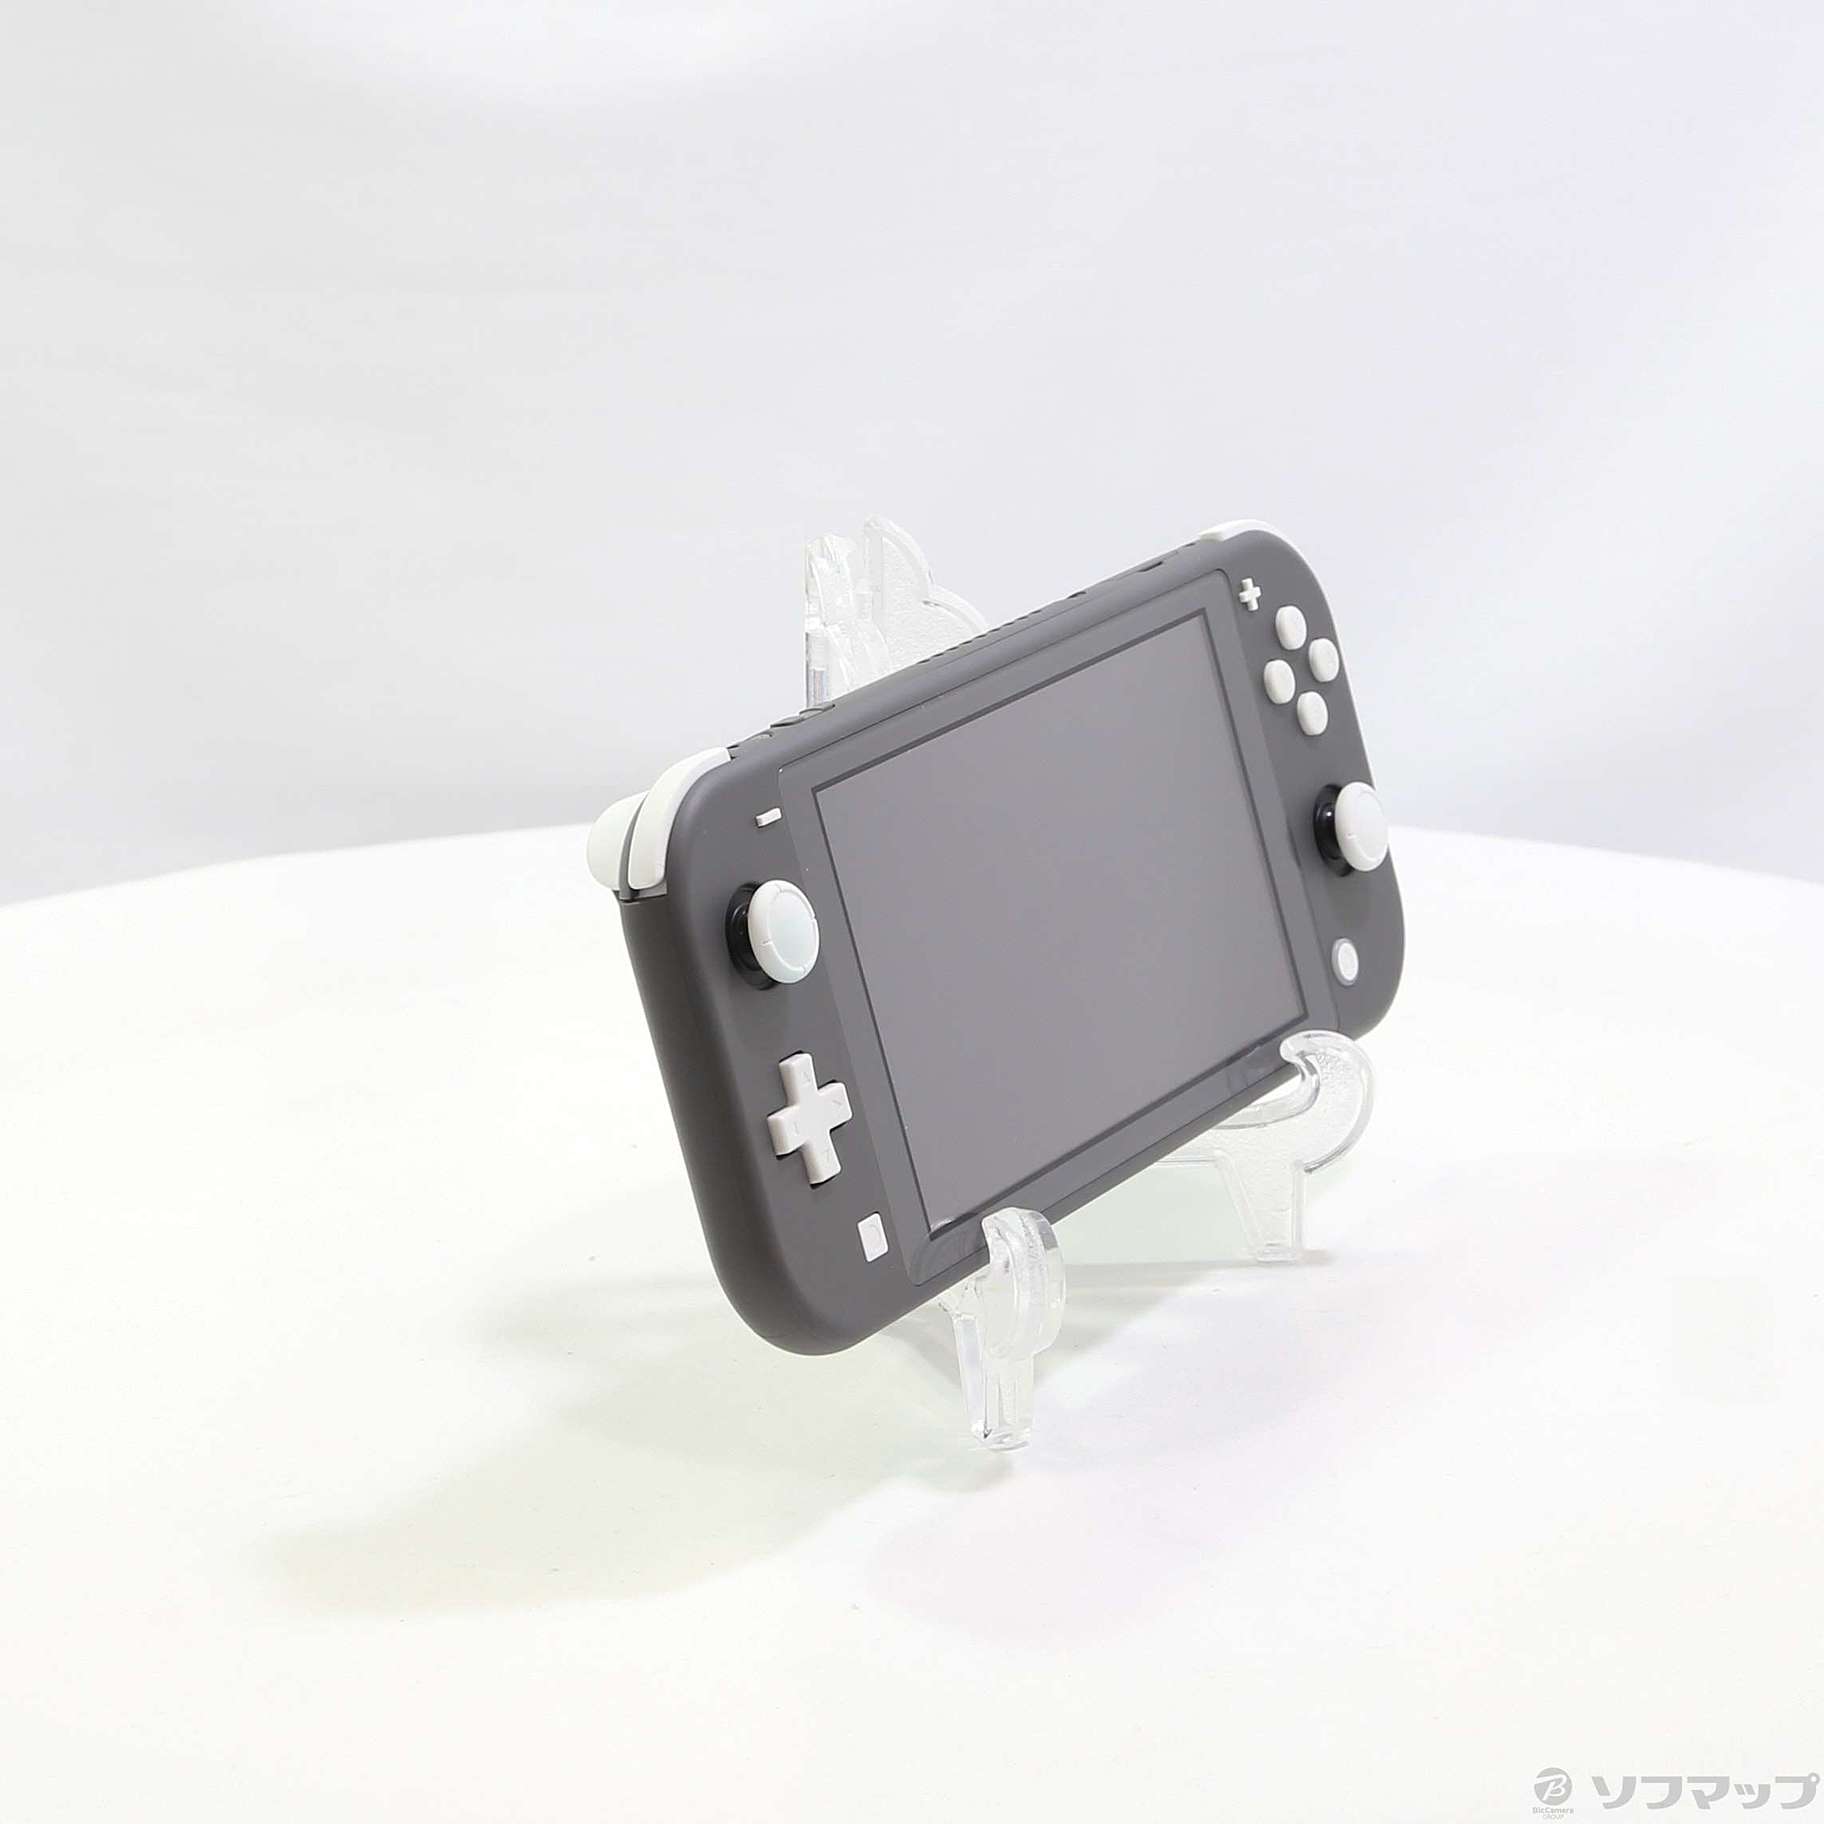 中古】セール対象品 Nintendo Switch Lite グレー ◇06/24(金)値下げ